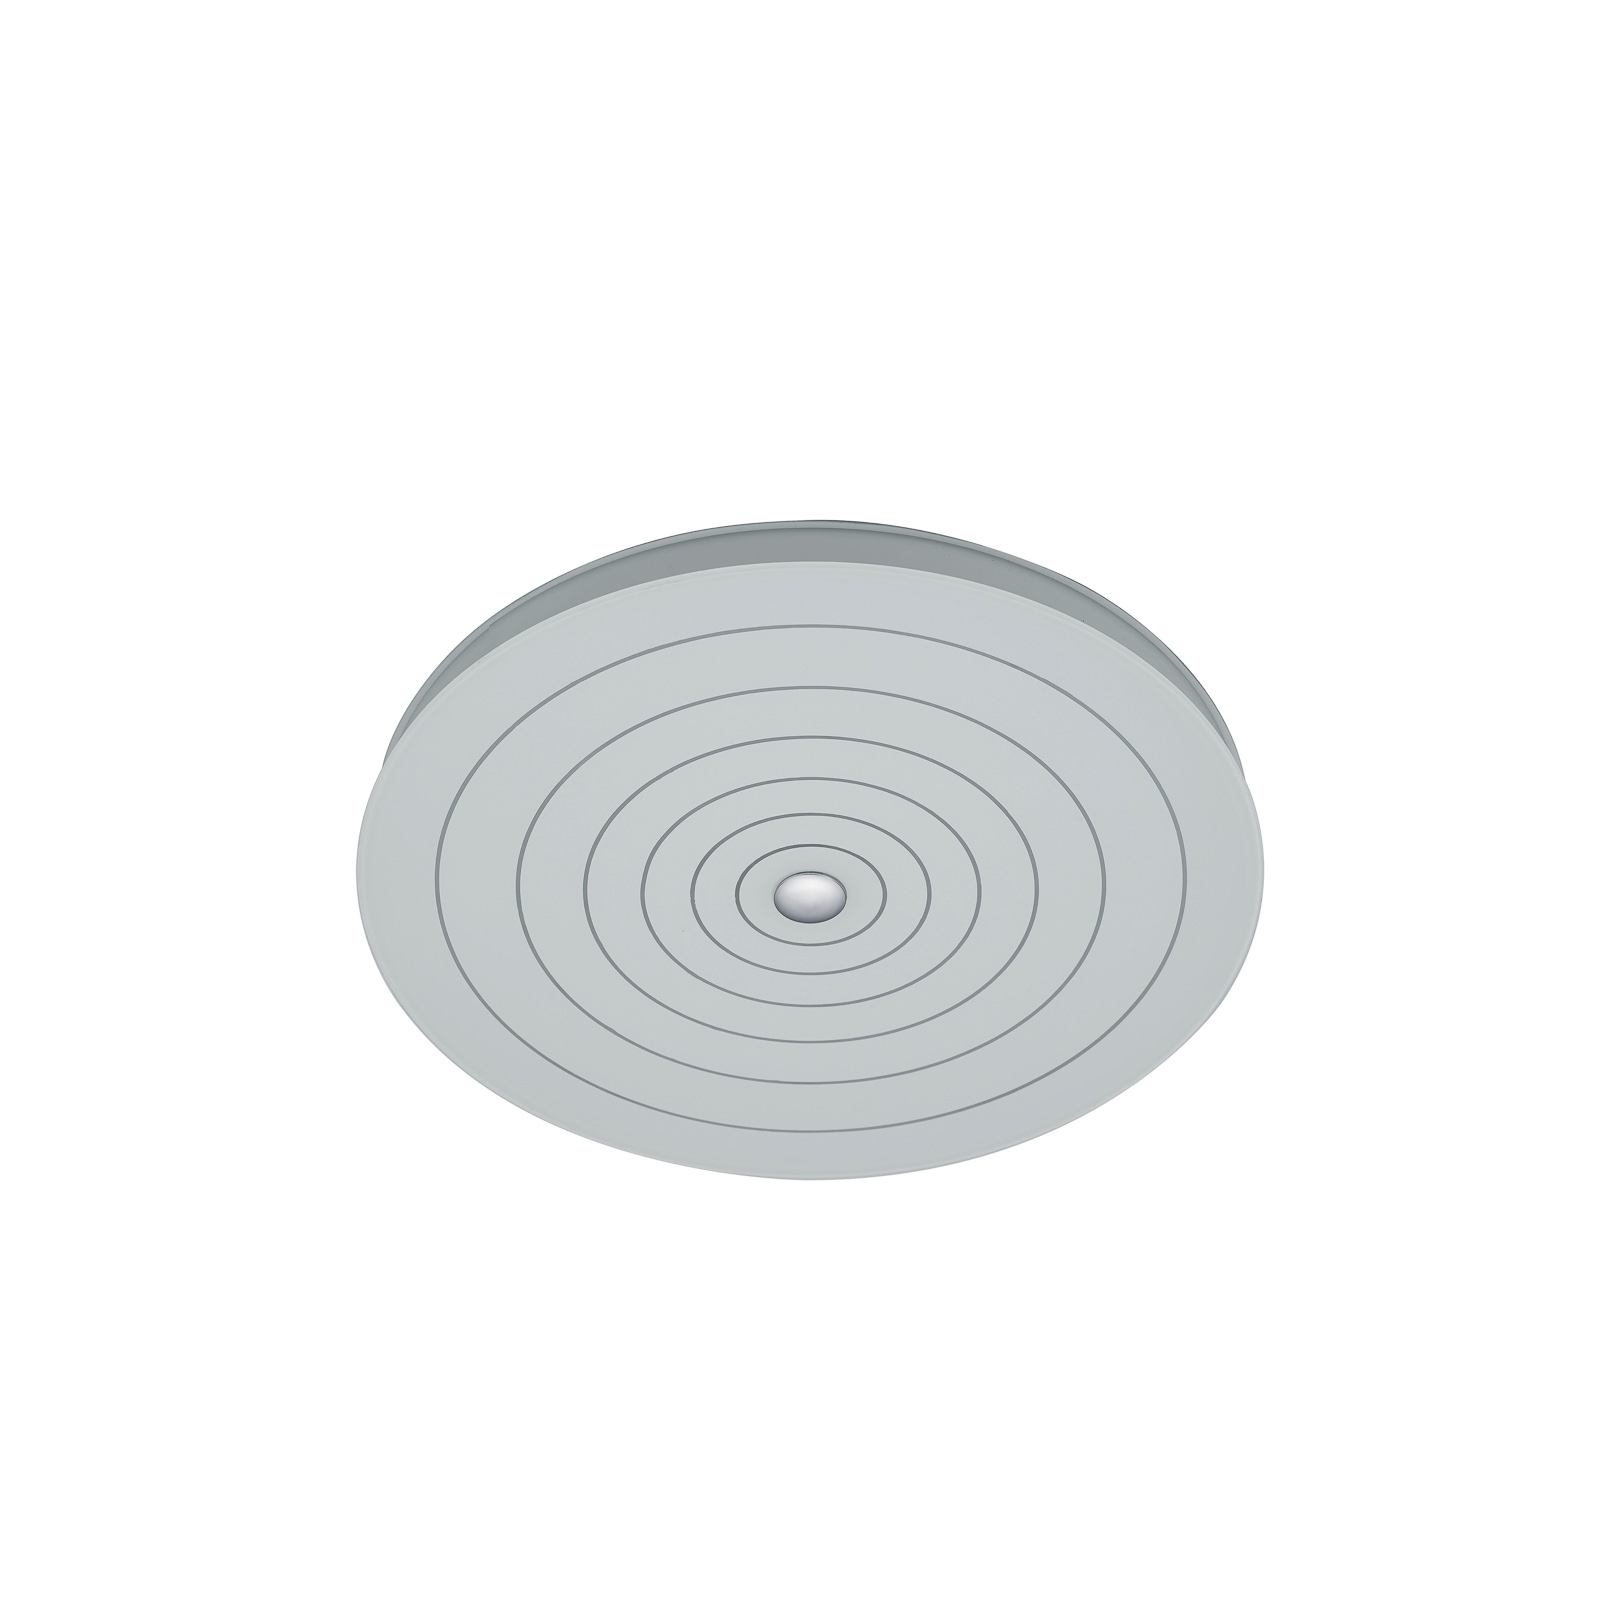 BANKAMP Mandala LED-kattovalaisin ympyrät, Ø 42 cm